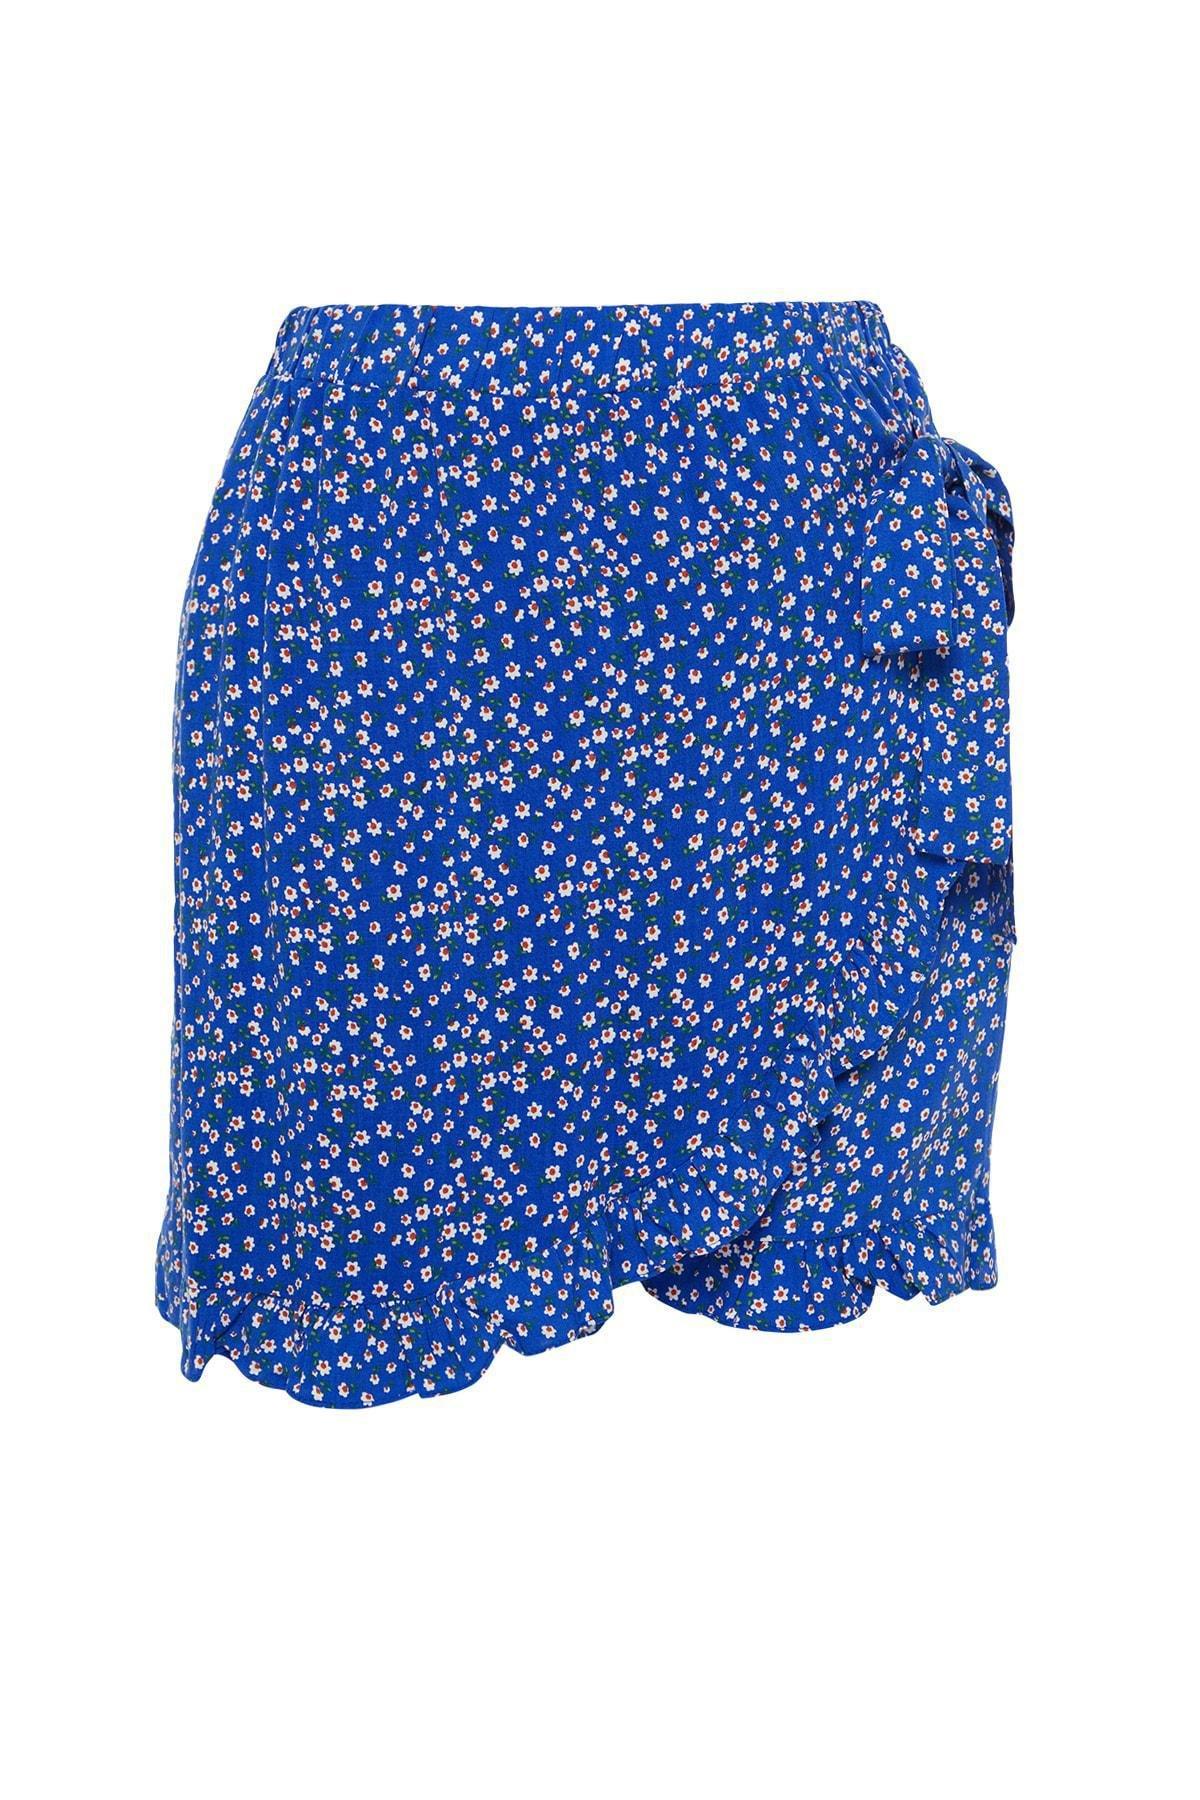 Trendyol - Blue Floral Plus Size Shorts